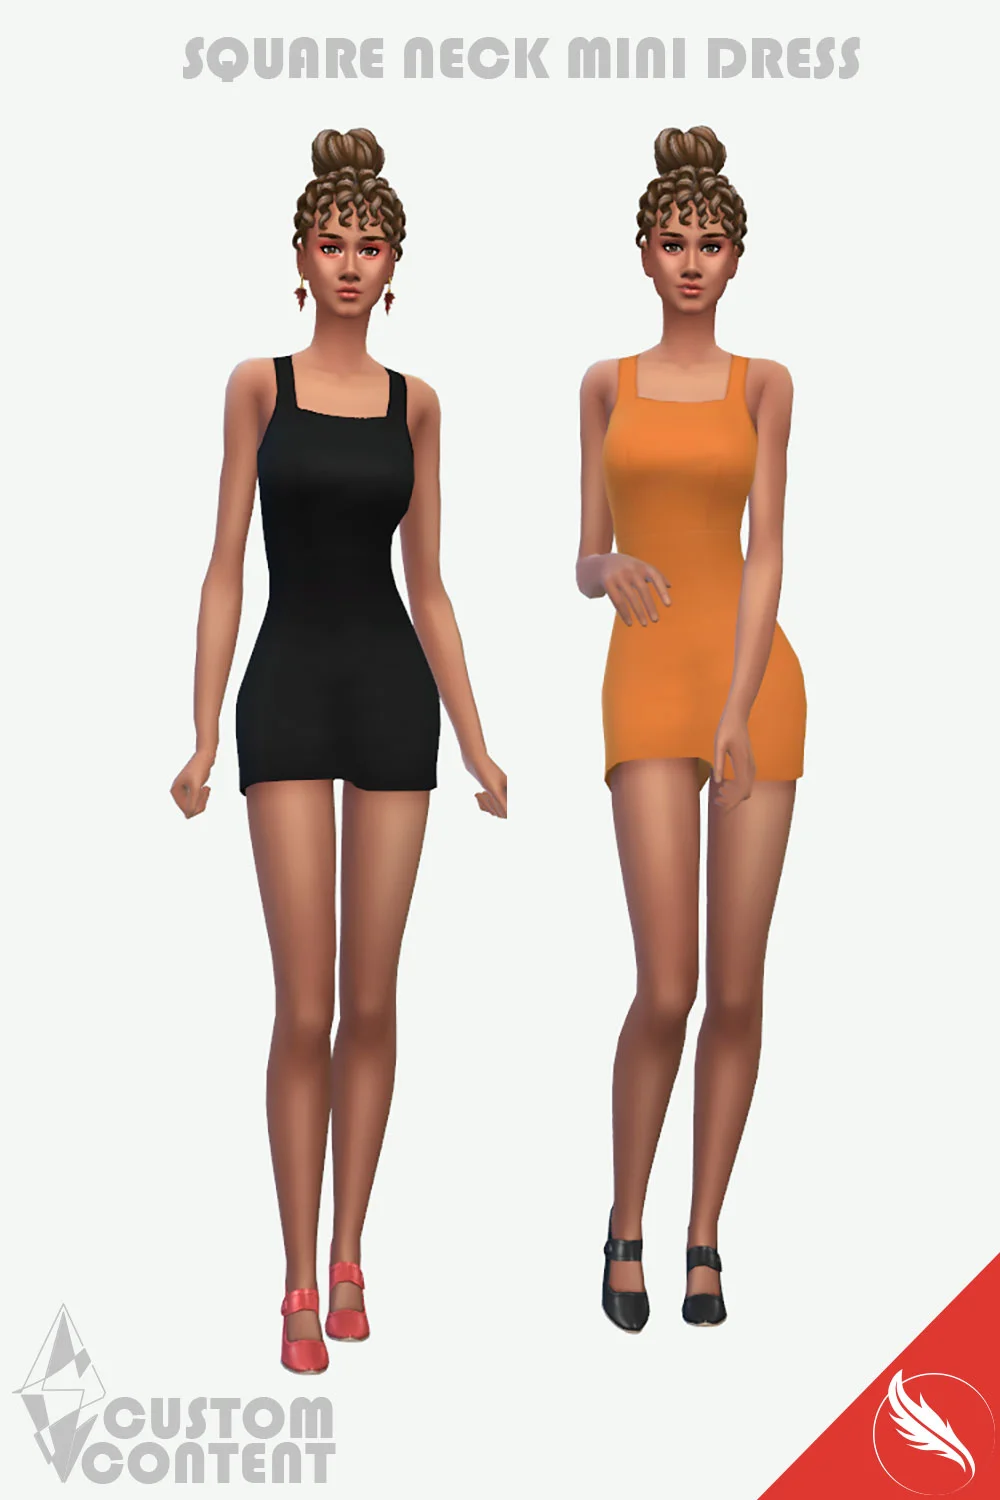 The Sims 4 Mini Dress